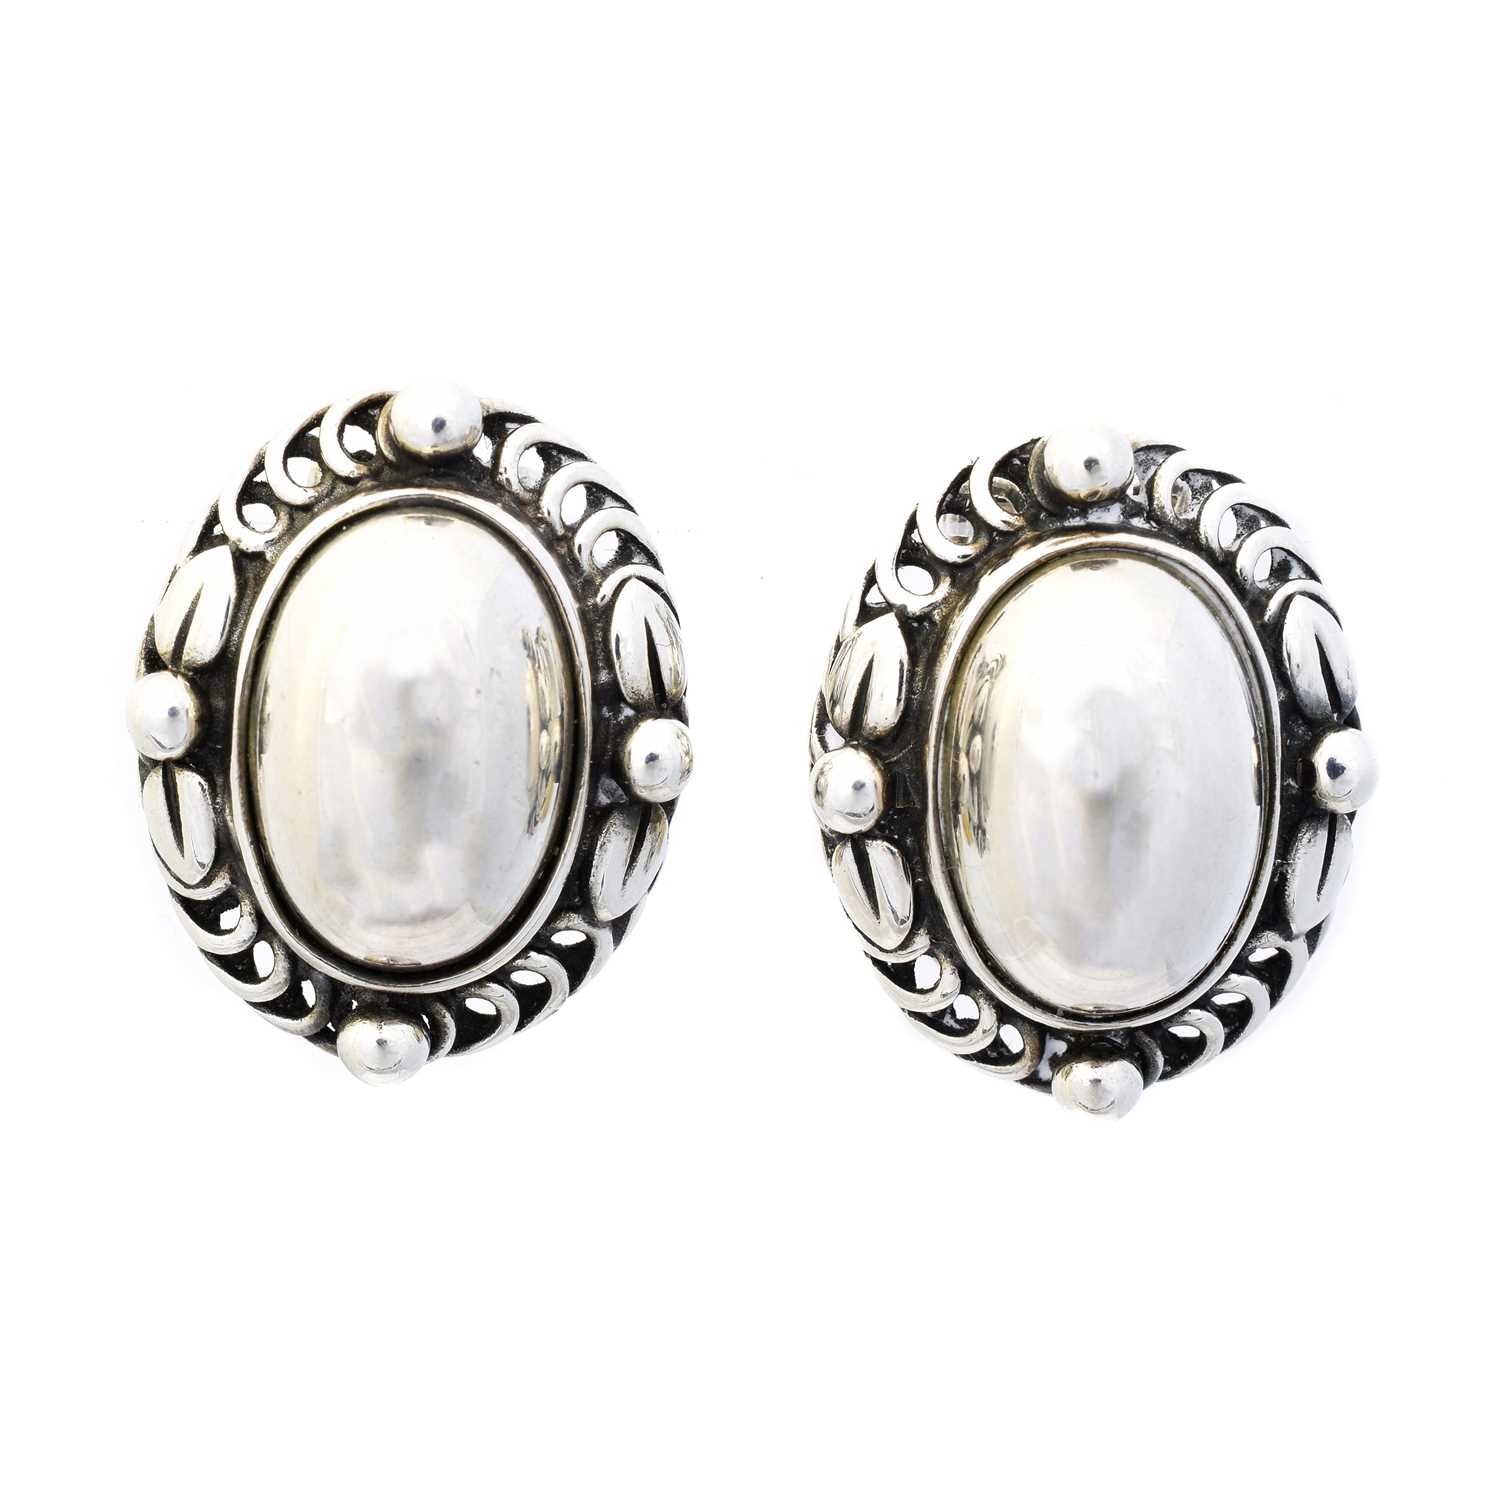 Lot 12 - A pair of Georg Jensen 'Heritage' earrings